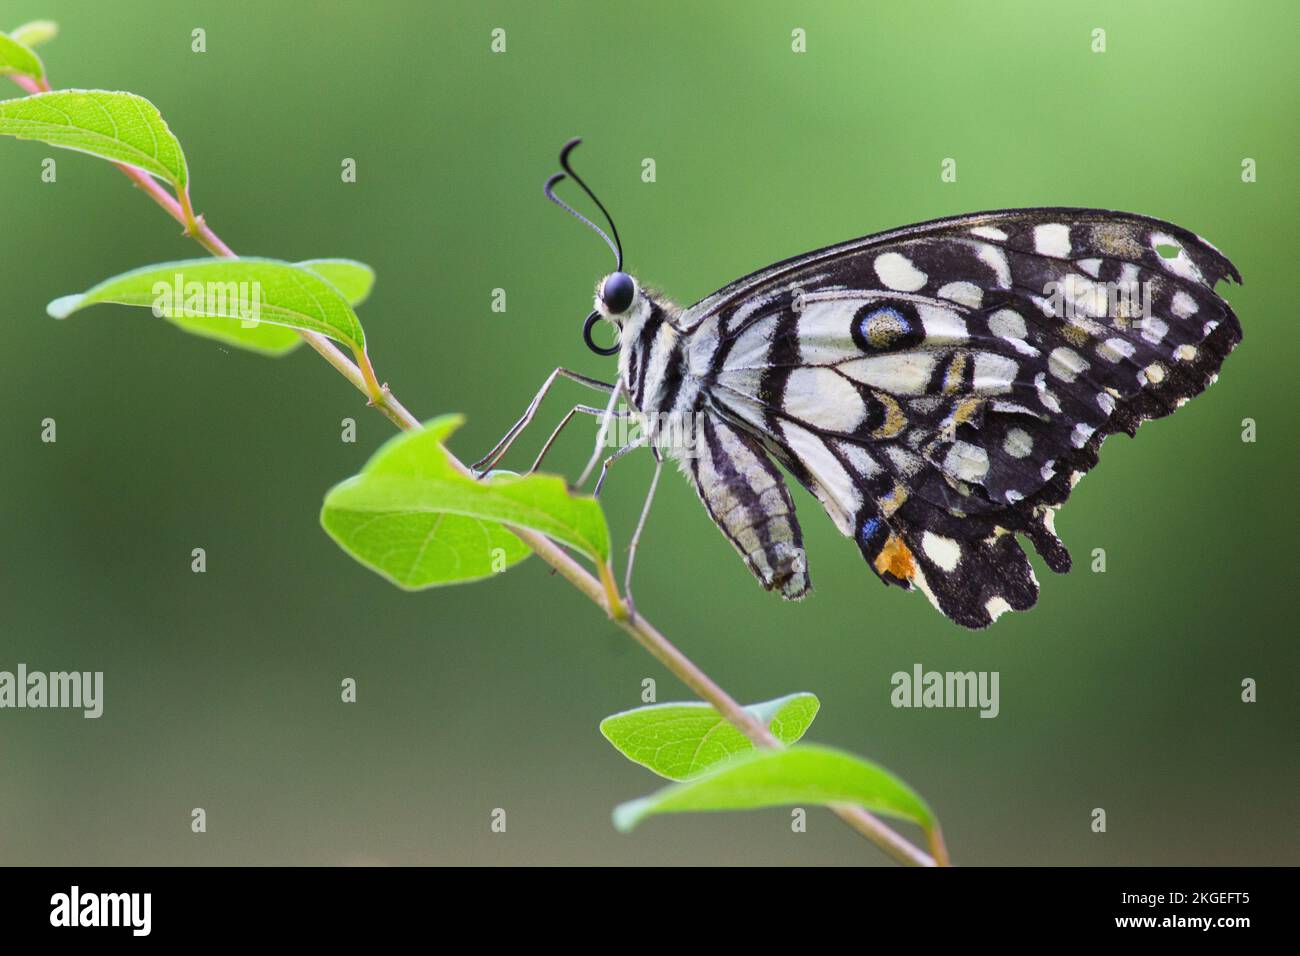 Wildtiere Makrobild des Papilio-Schmetterlings oder des gemeinen Limettenschmetterlings, der auf der Blumenpflanze in seinem natürlichen Lebensraum vor grünem Hintergrund ruht Stockfoto